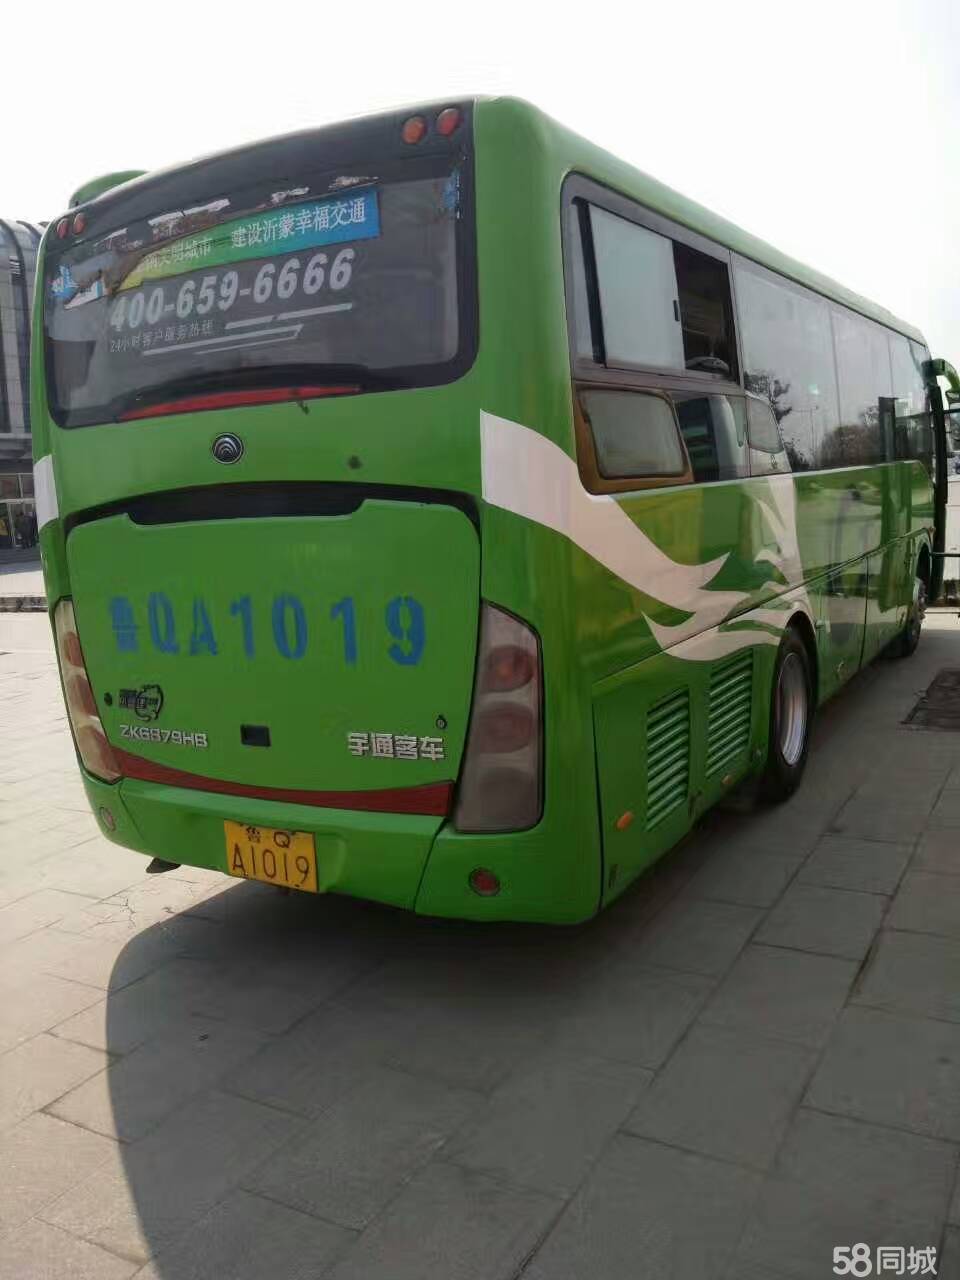 宇通 旅游团体客车公司常年收售11座55座客车